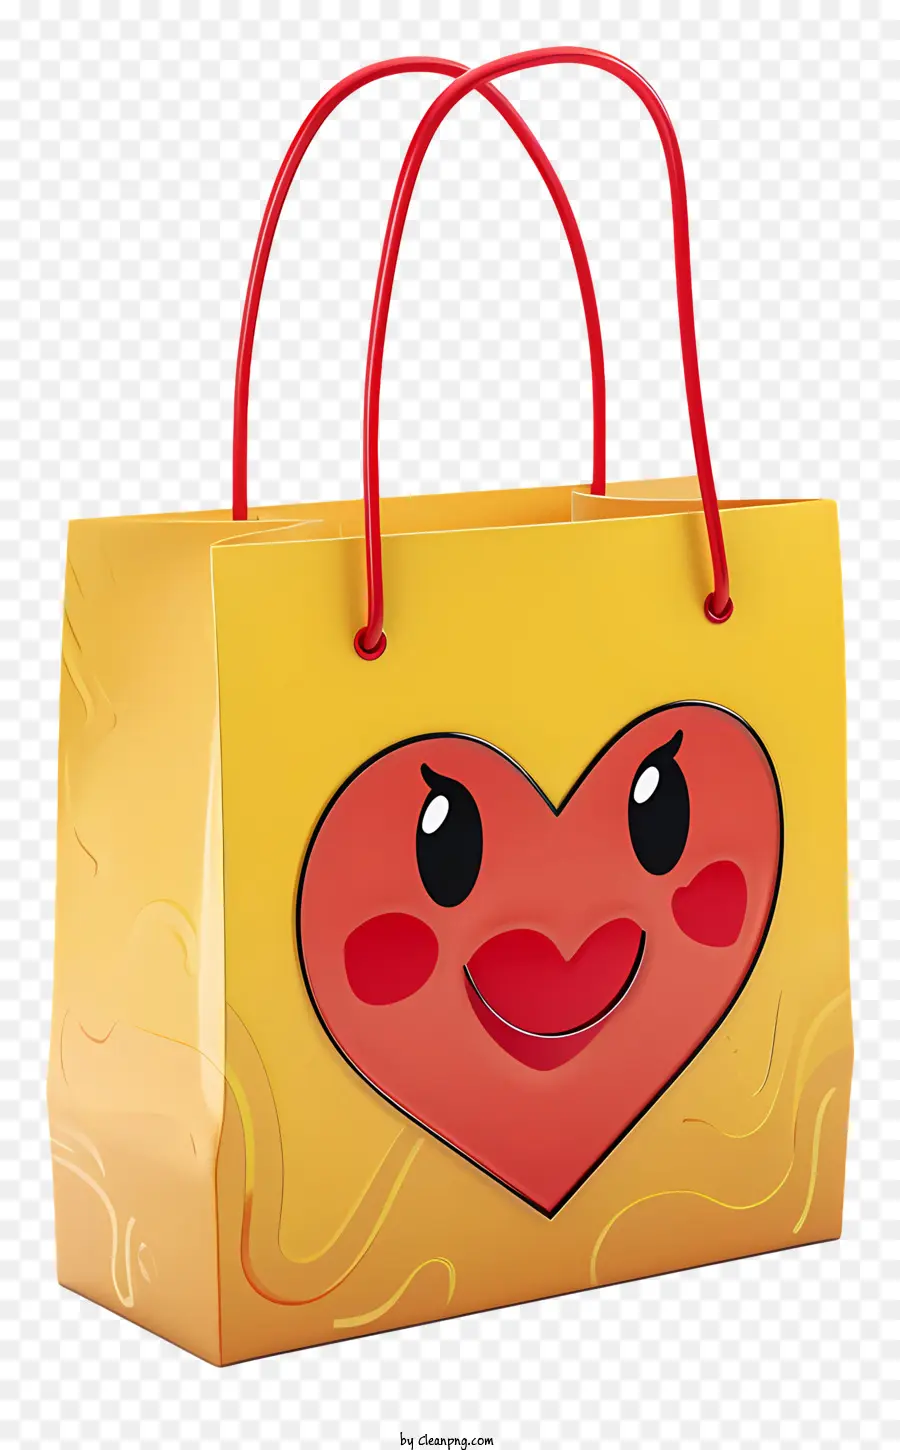 Einkaufstasche - Herzgesichtige Einkaufstasche mit lächelnden Ausdruck